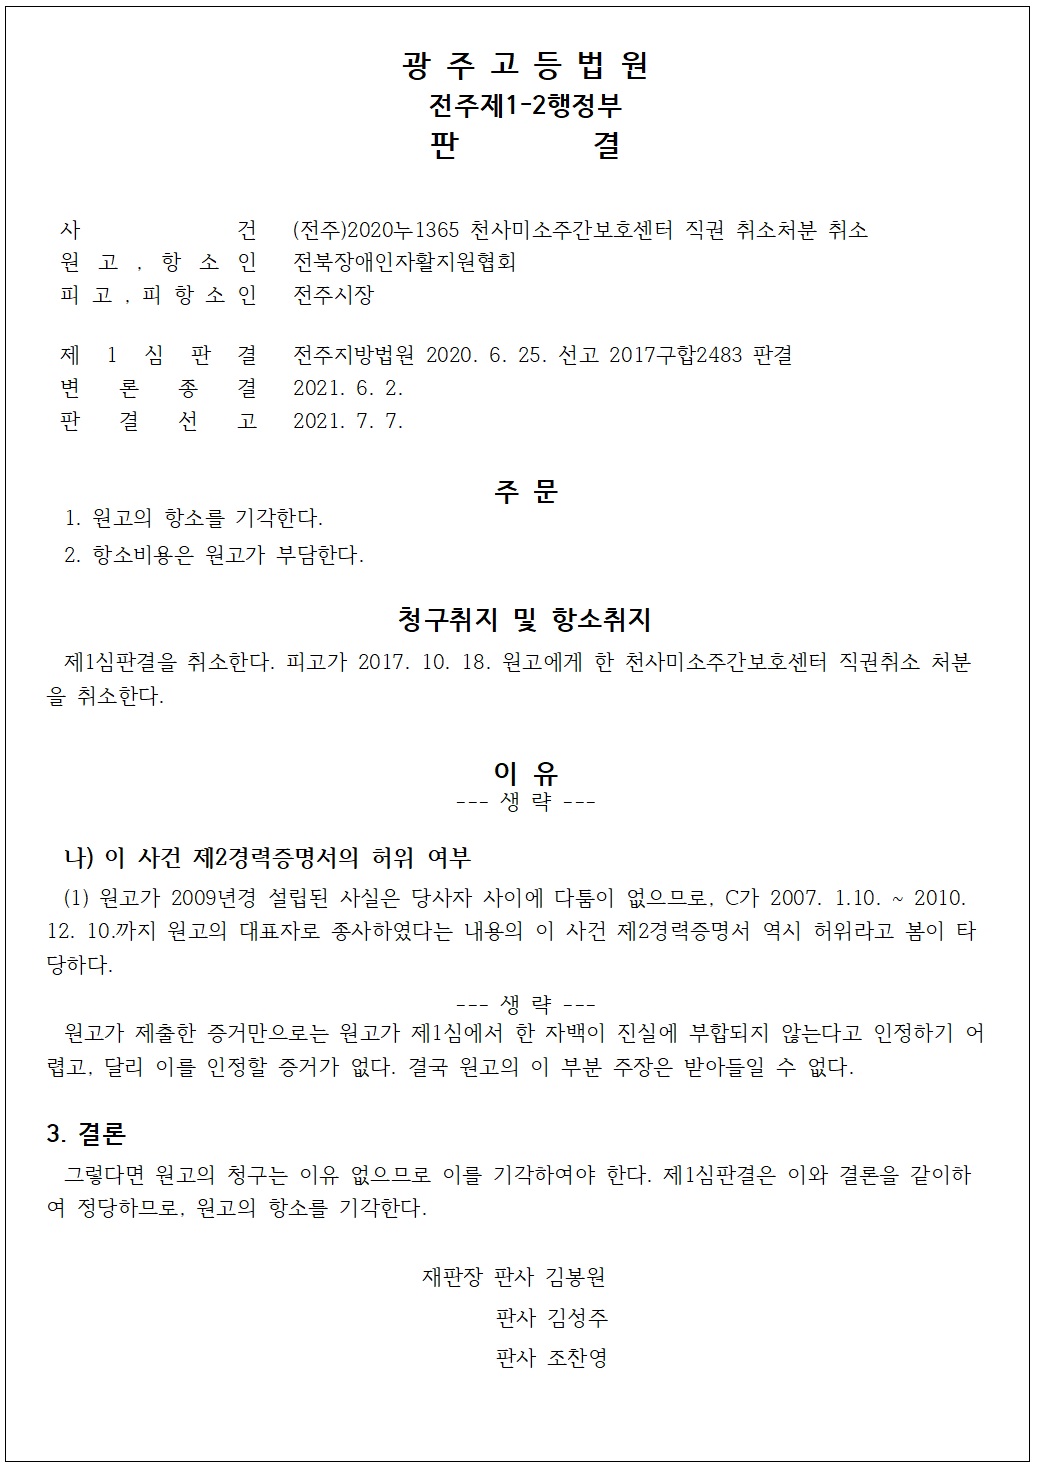 21.7.9_광주고법 판결 부분인용(웹뉴스레터).jpg